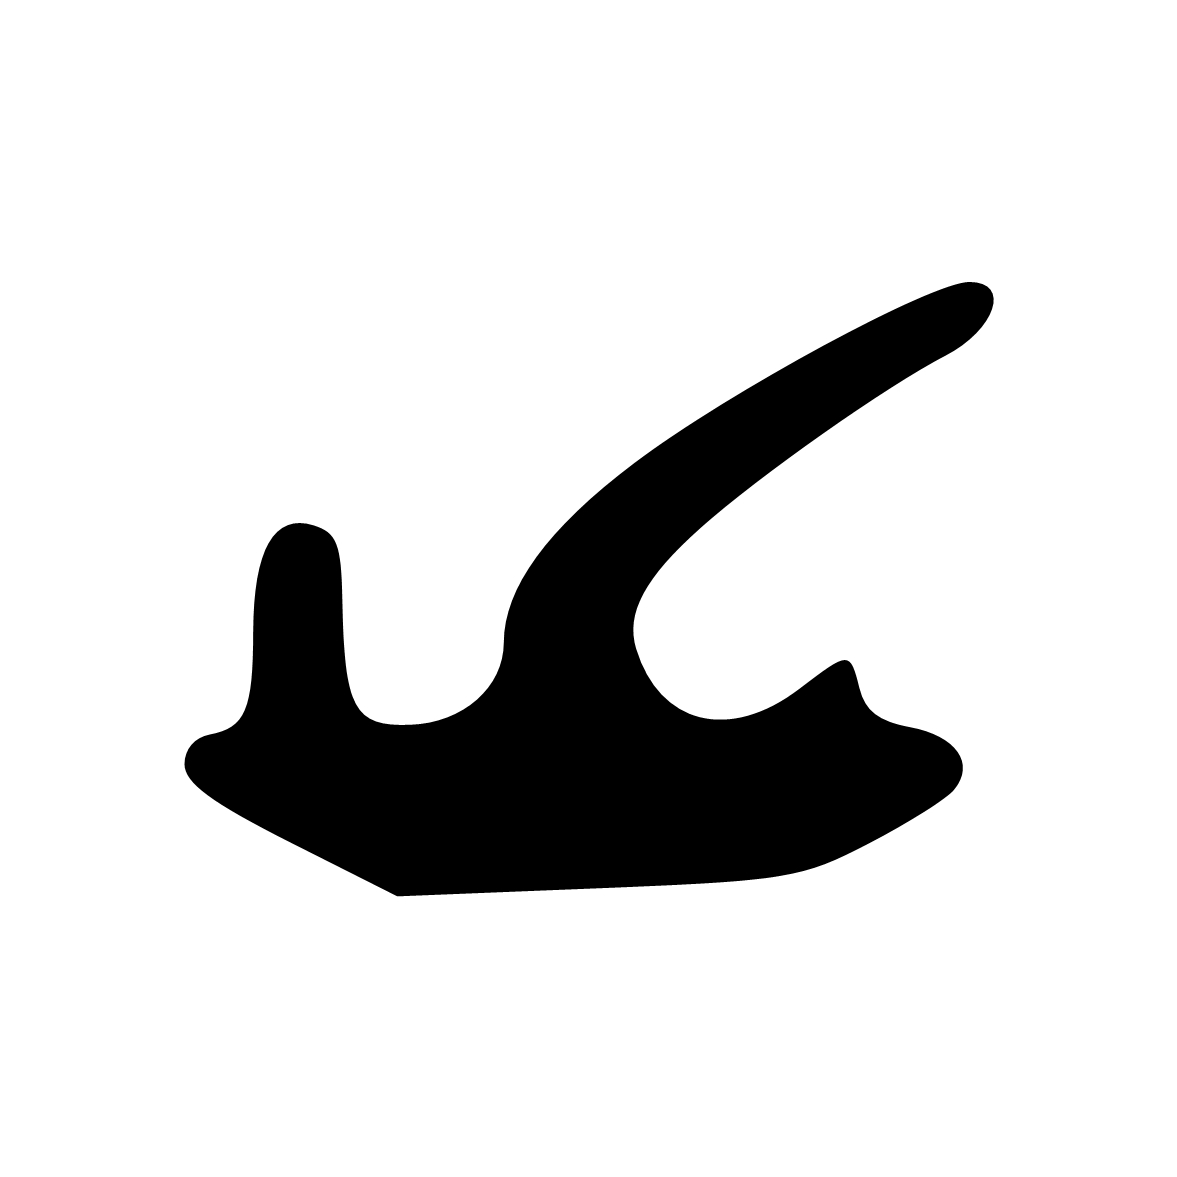 Anschlagdichtung mit Lippe und glattem Fuß | 7 mm Höhe | Farbe: schwarz 